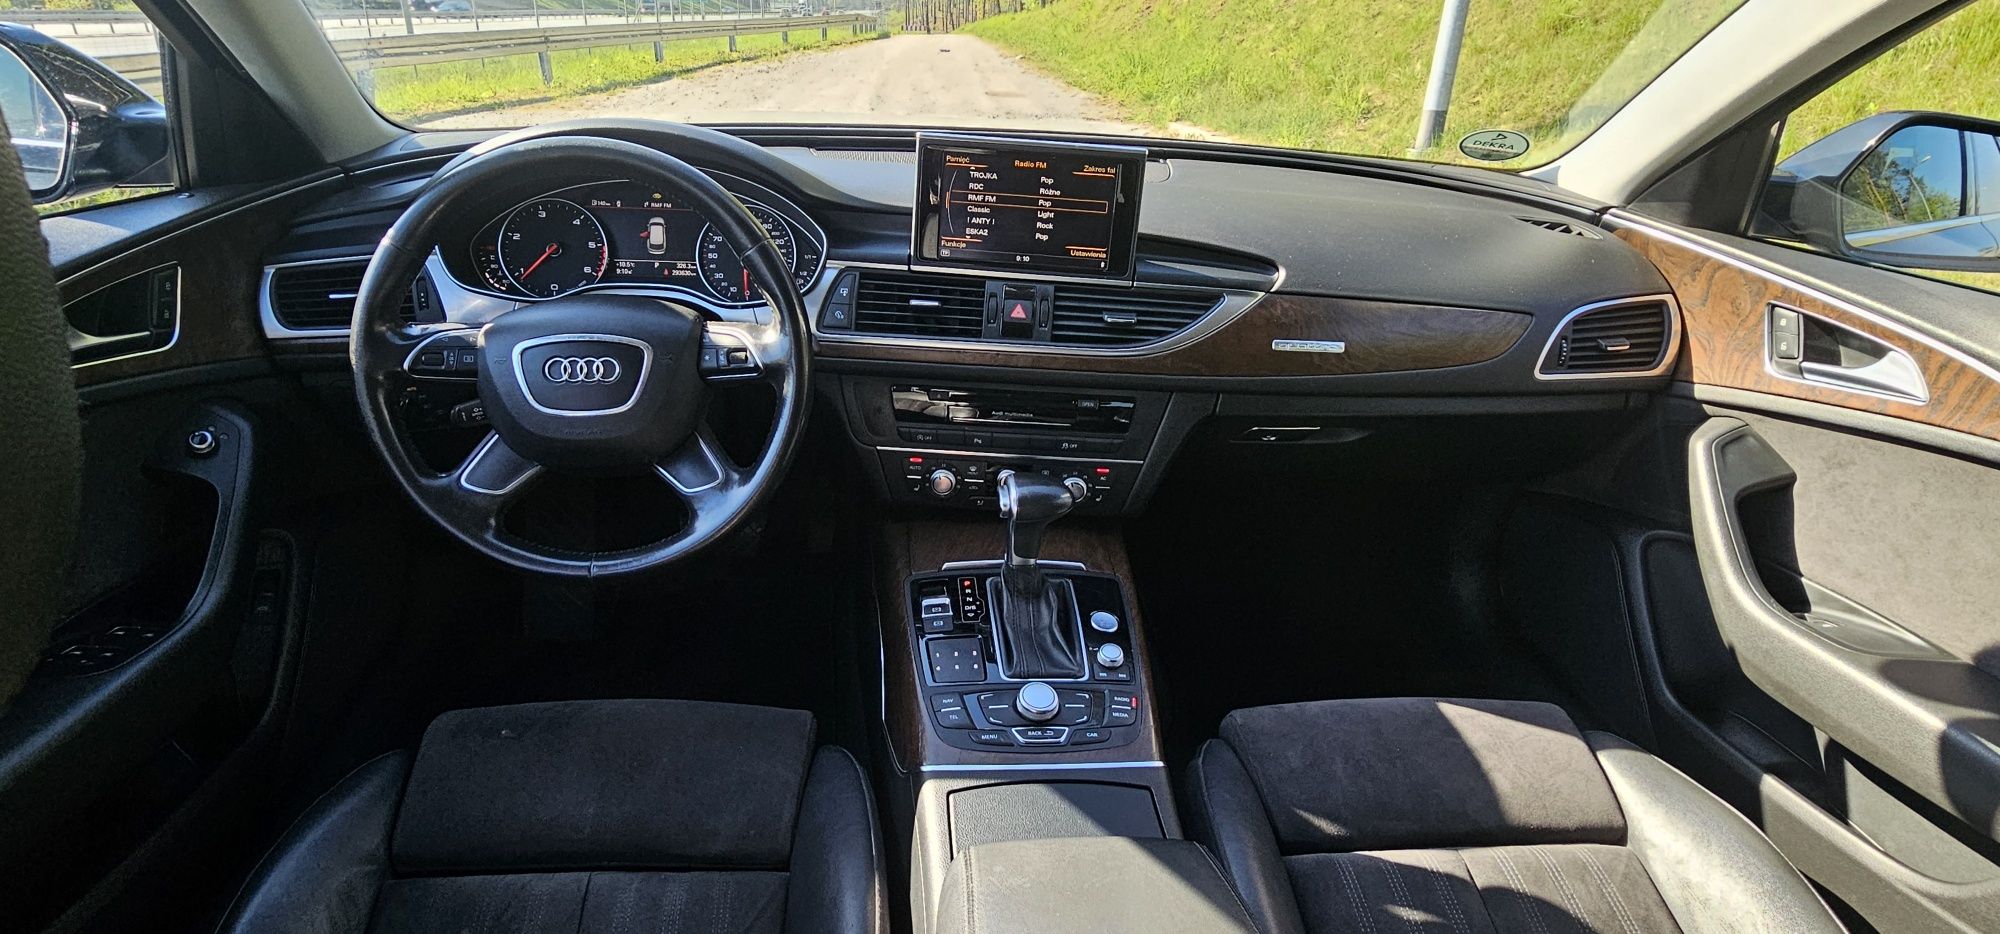 Audi A6 4x4 245km diesel